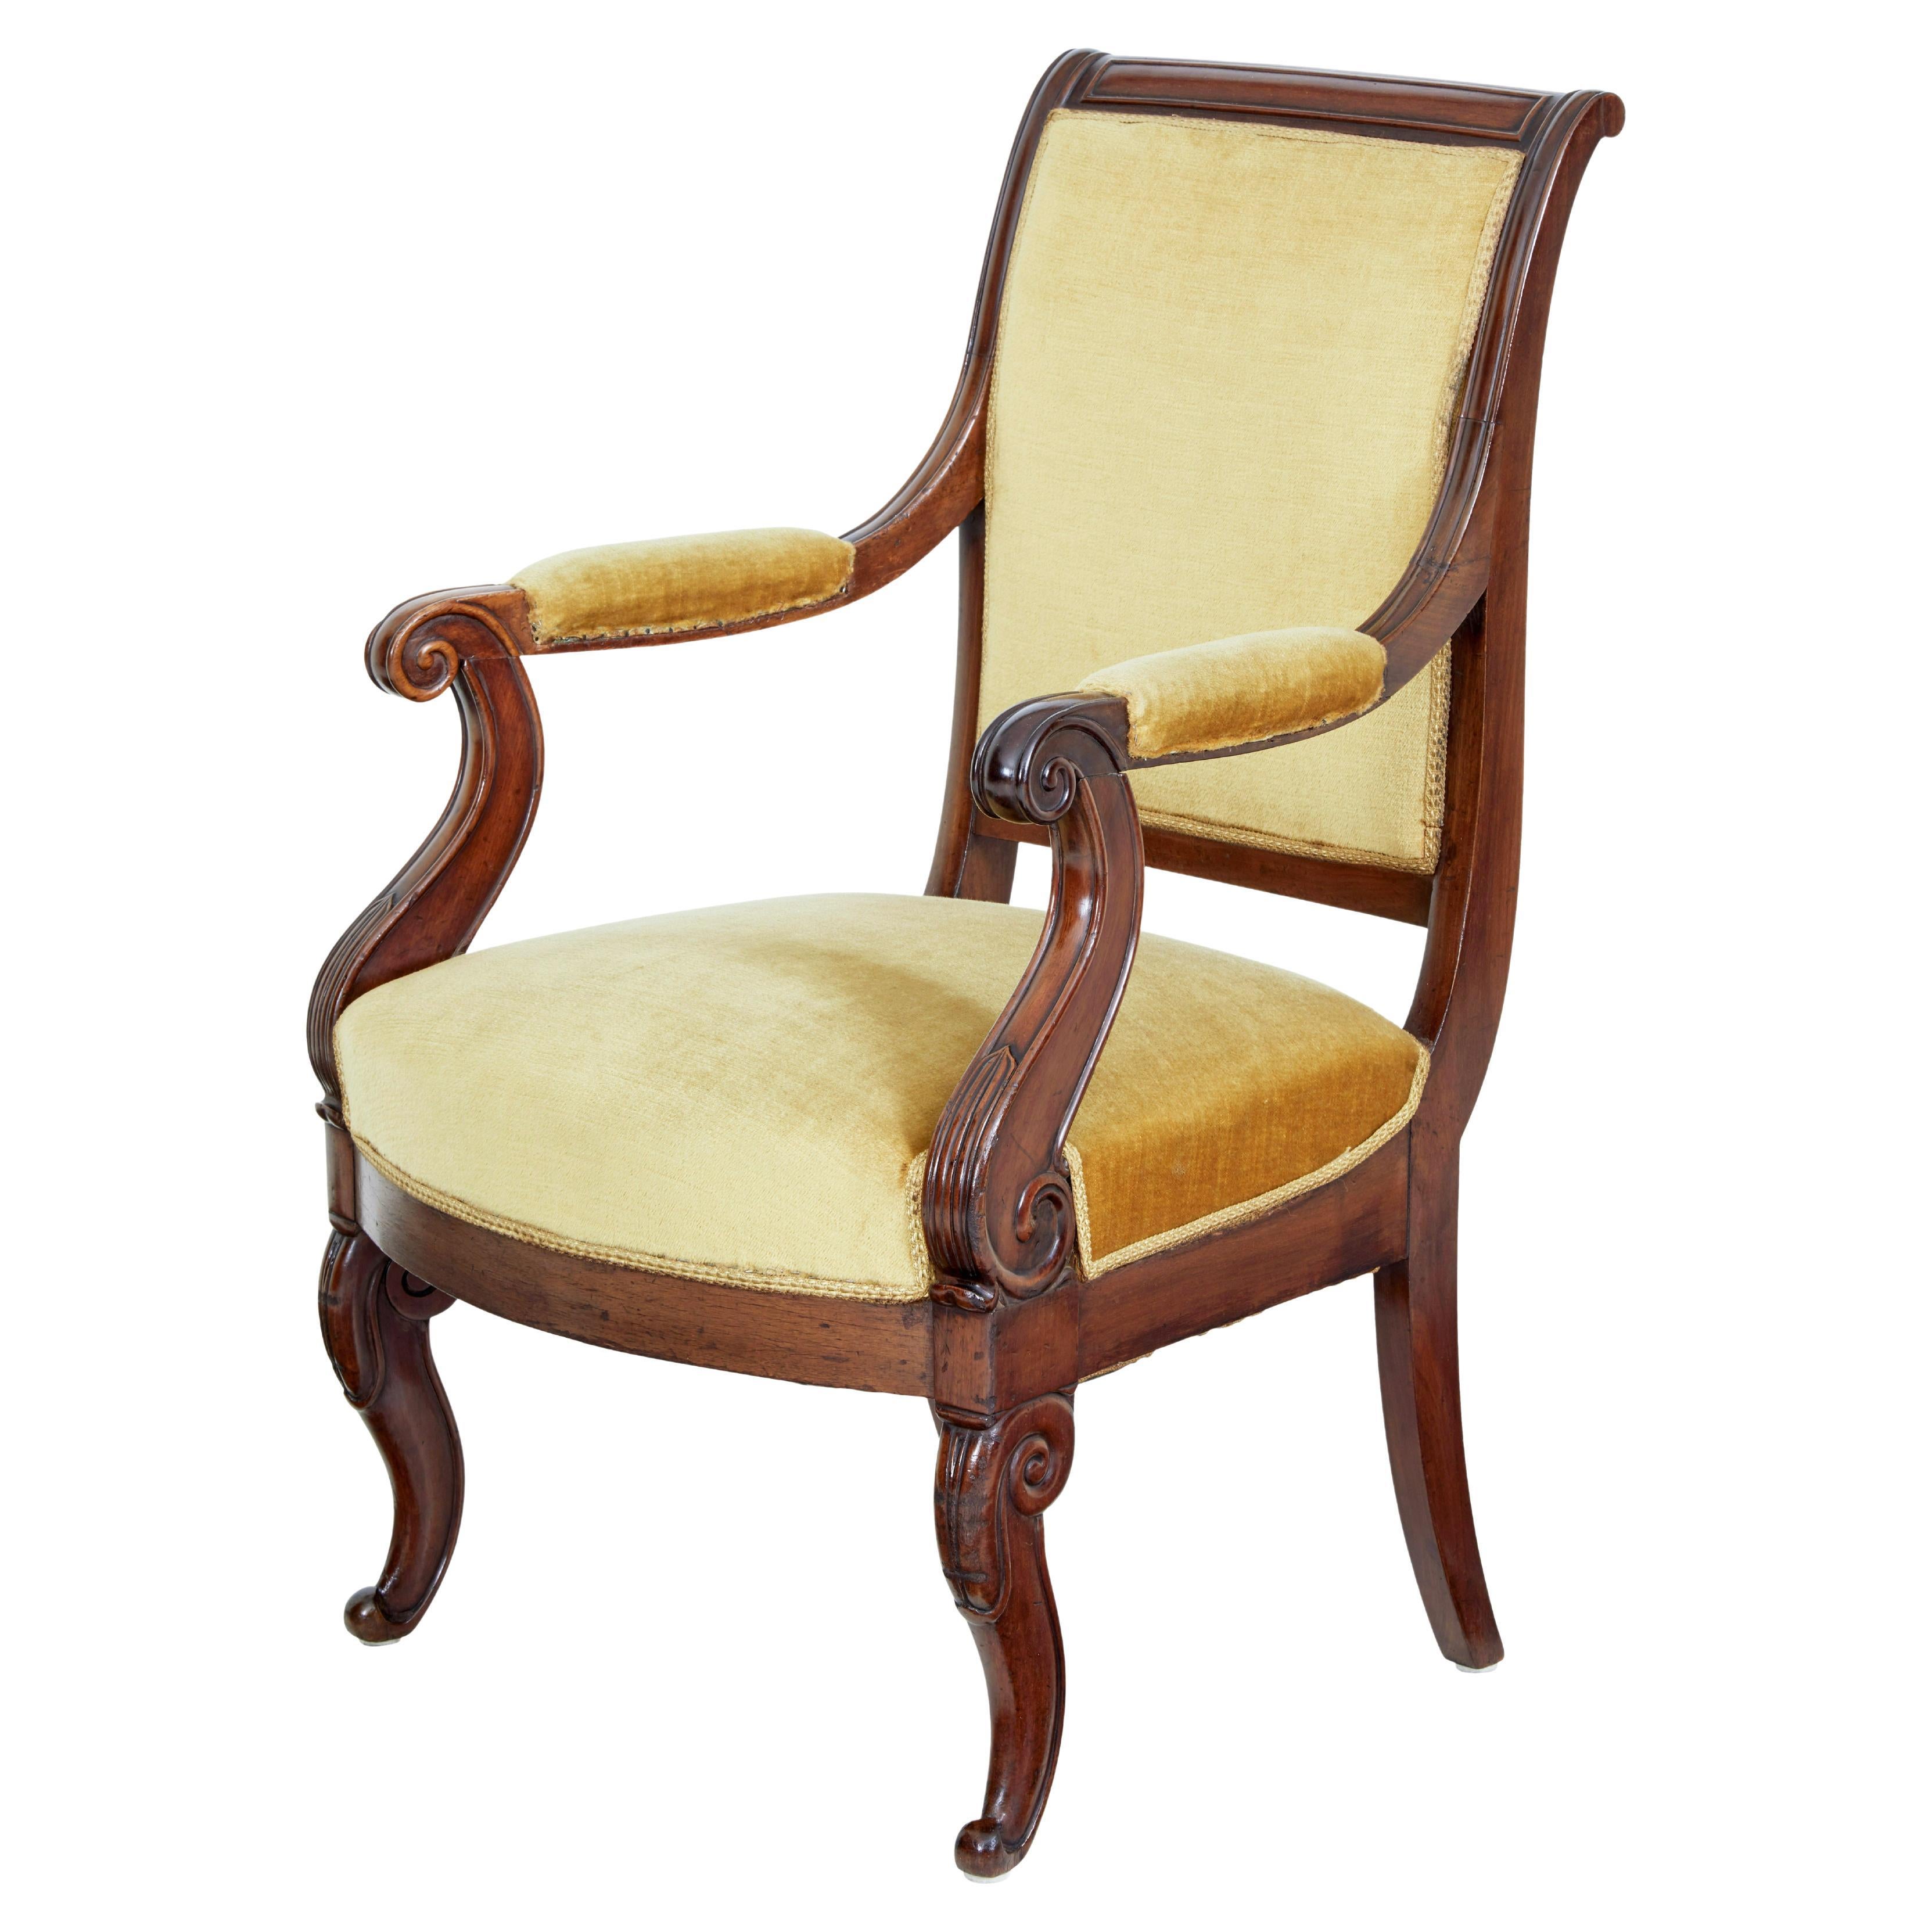 19th century French empire revival mahogany armchair